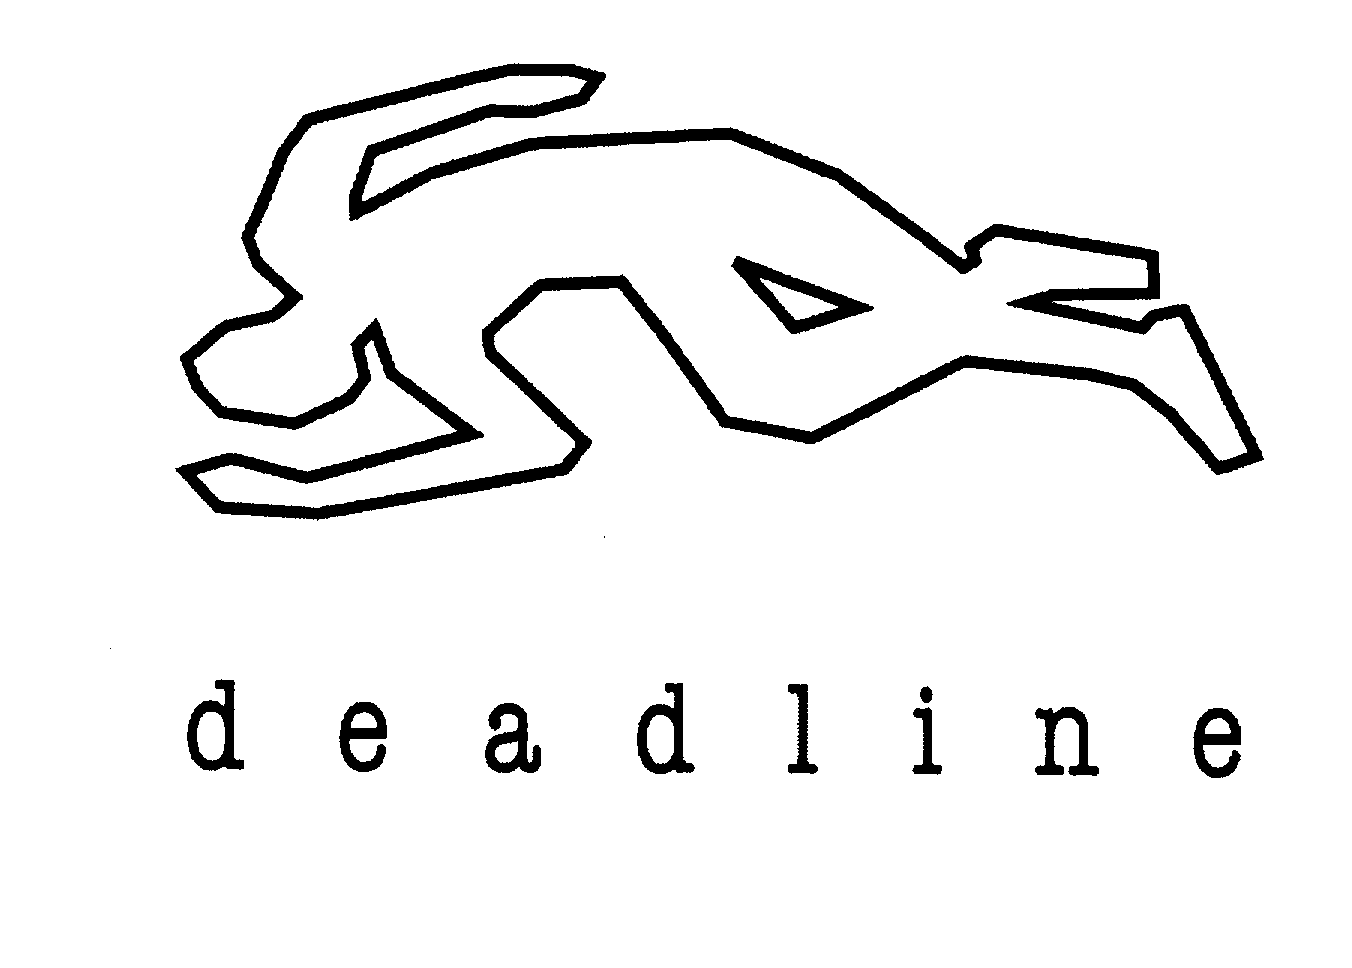 Trademark Logo DEADLINE